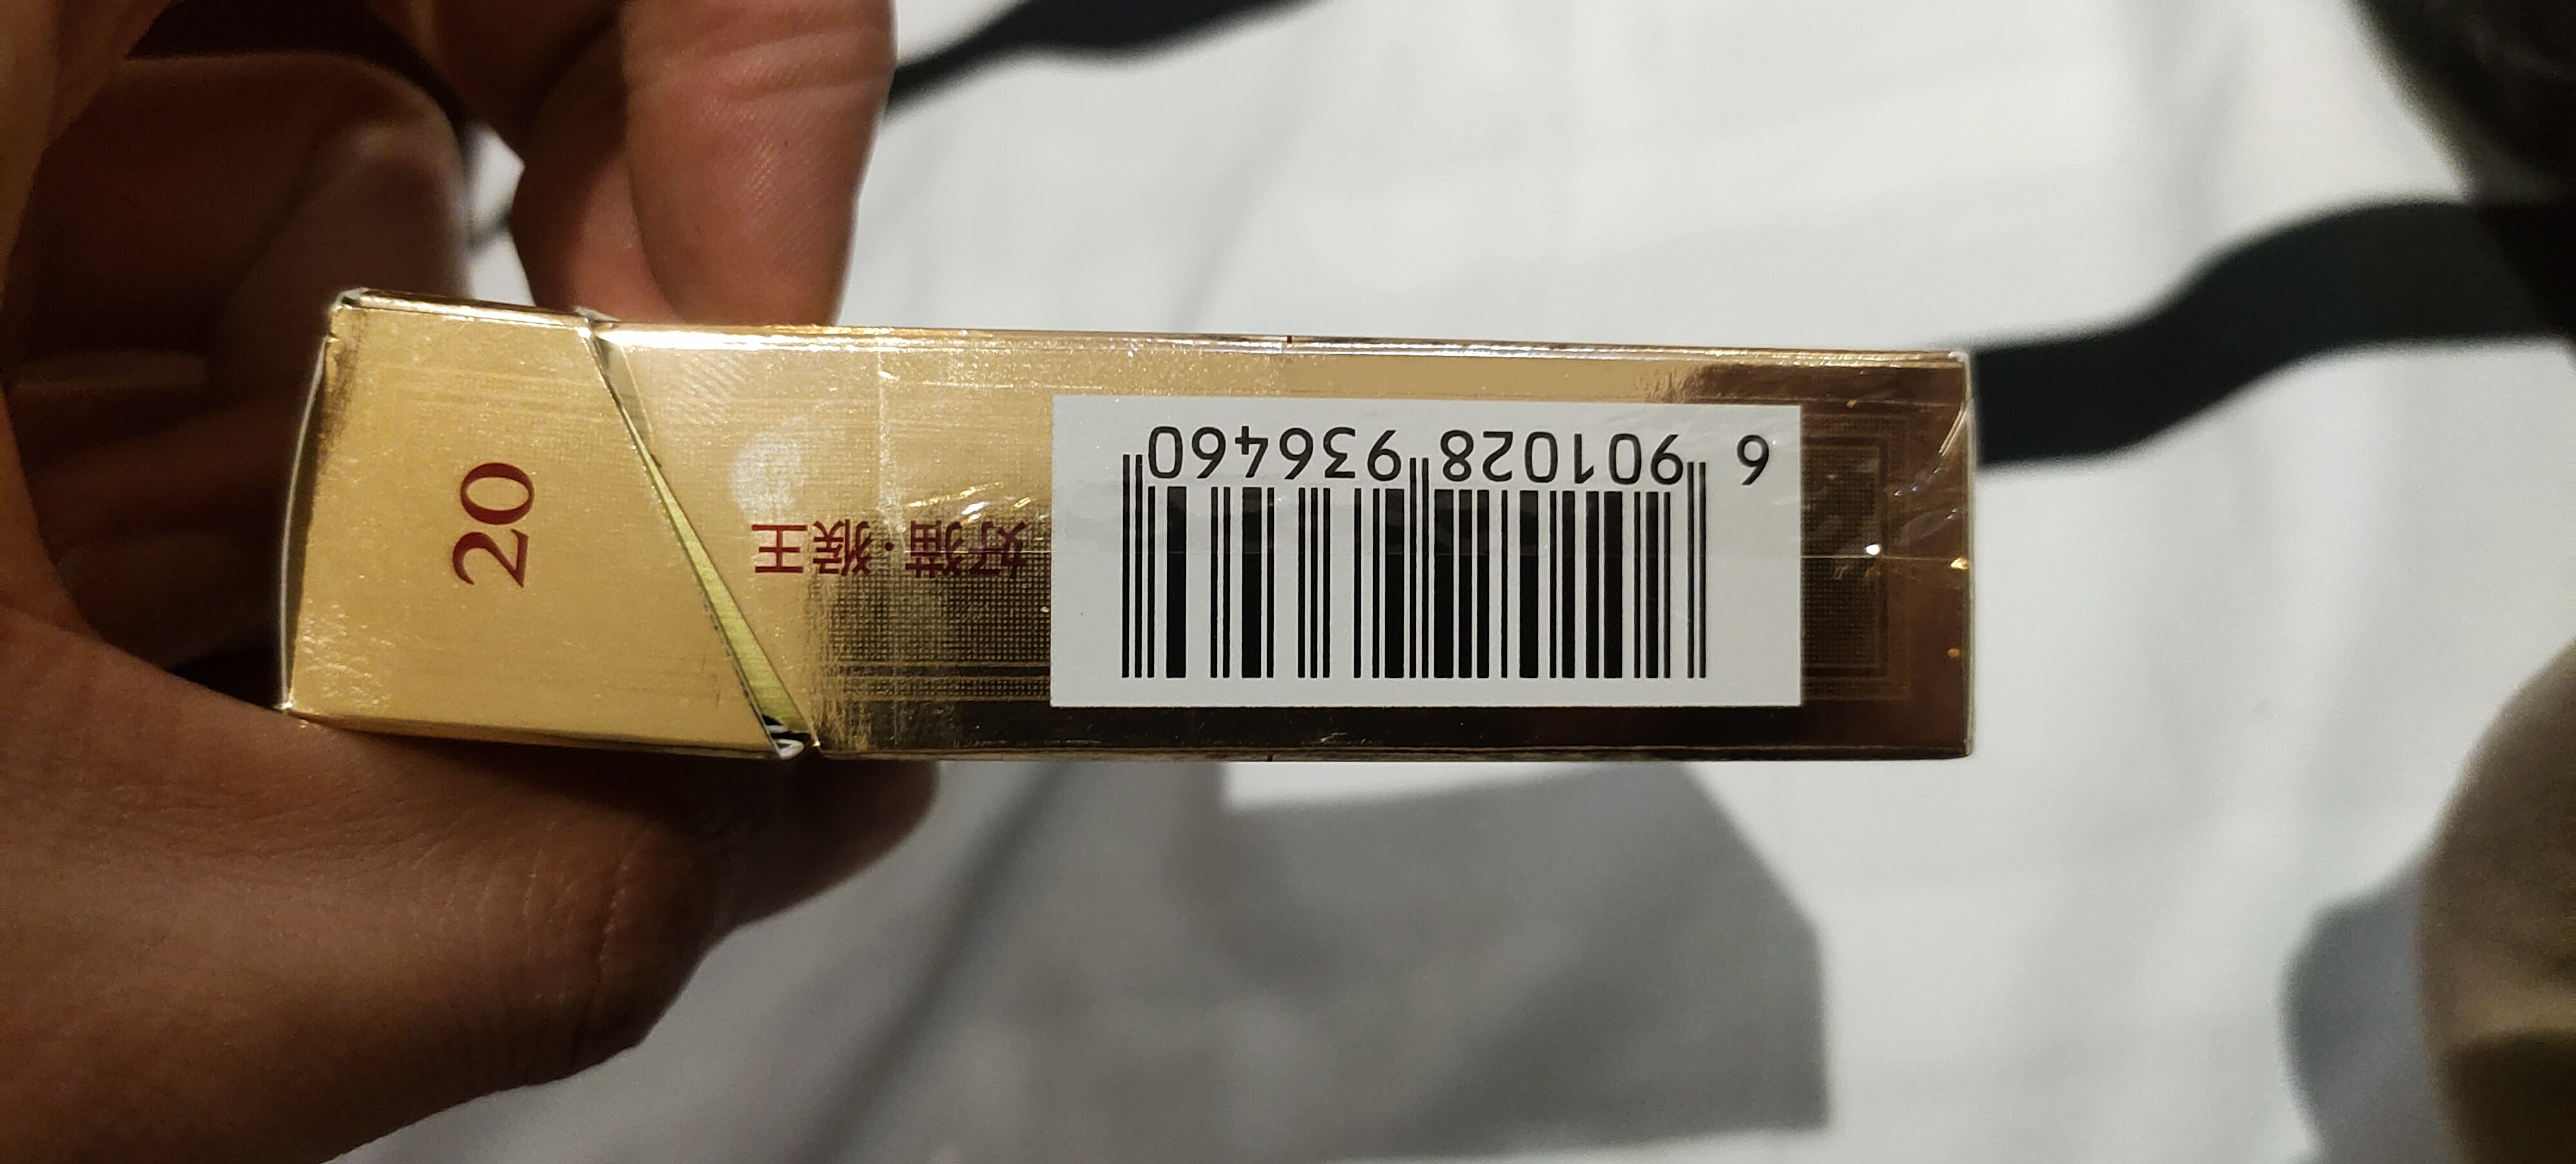 【稳定低保】最新全品种烟盒条码回收项目，简单动手一天轻松几百块